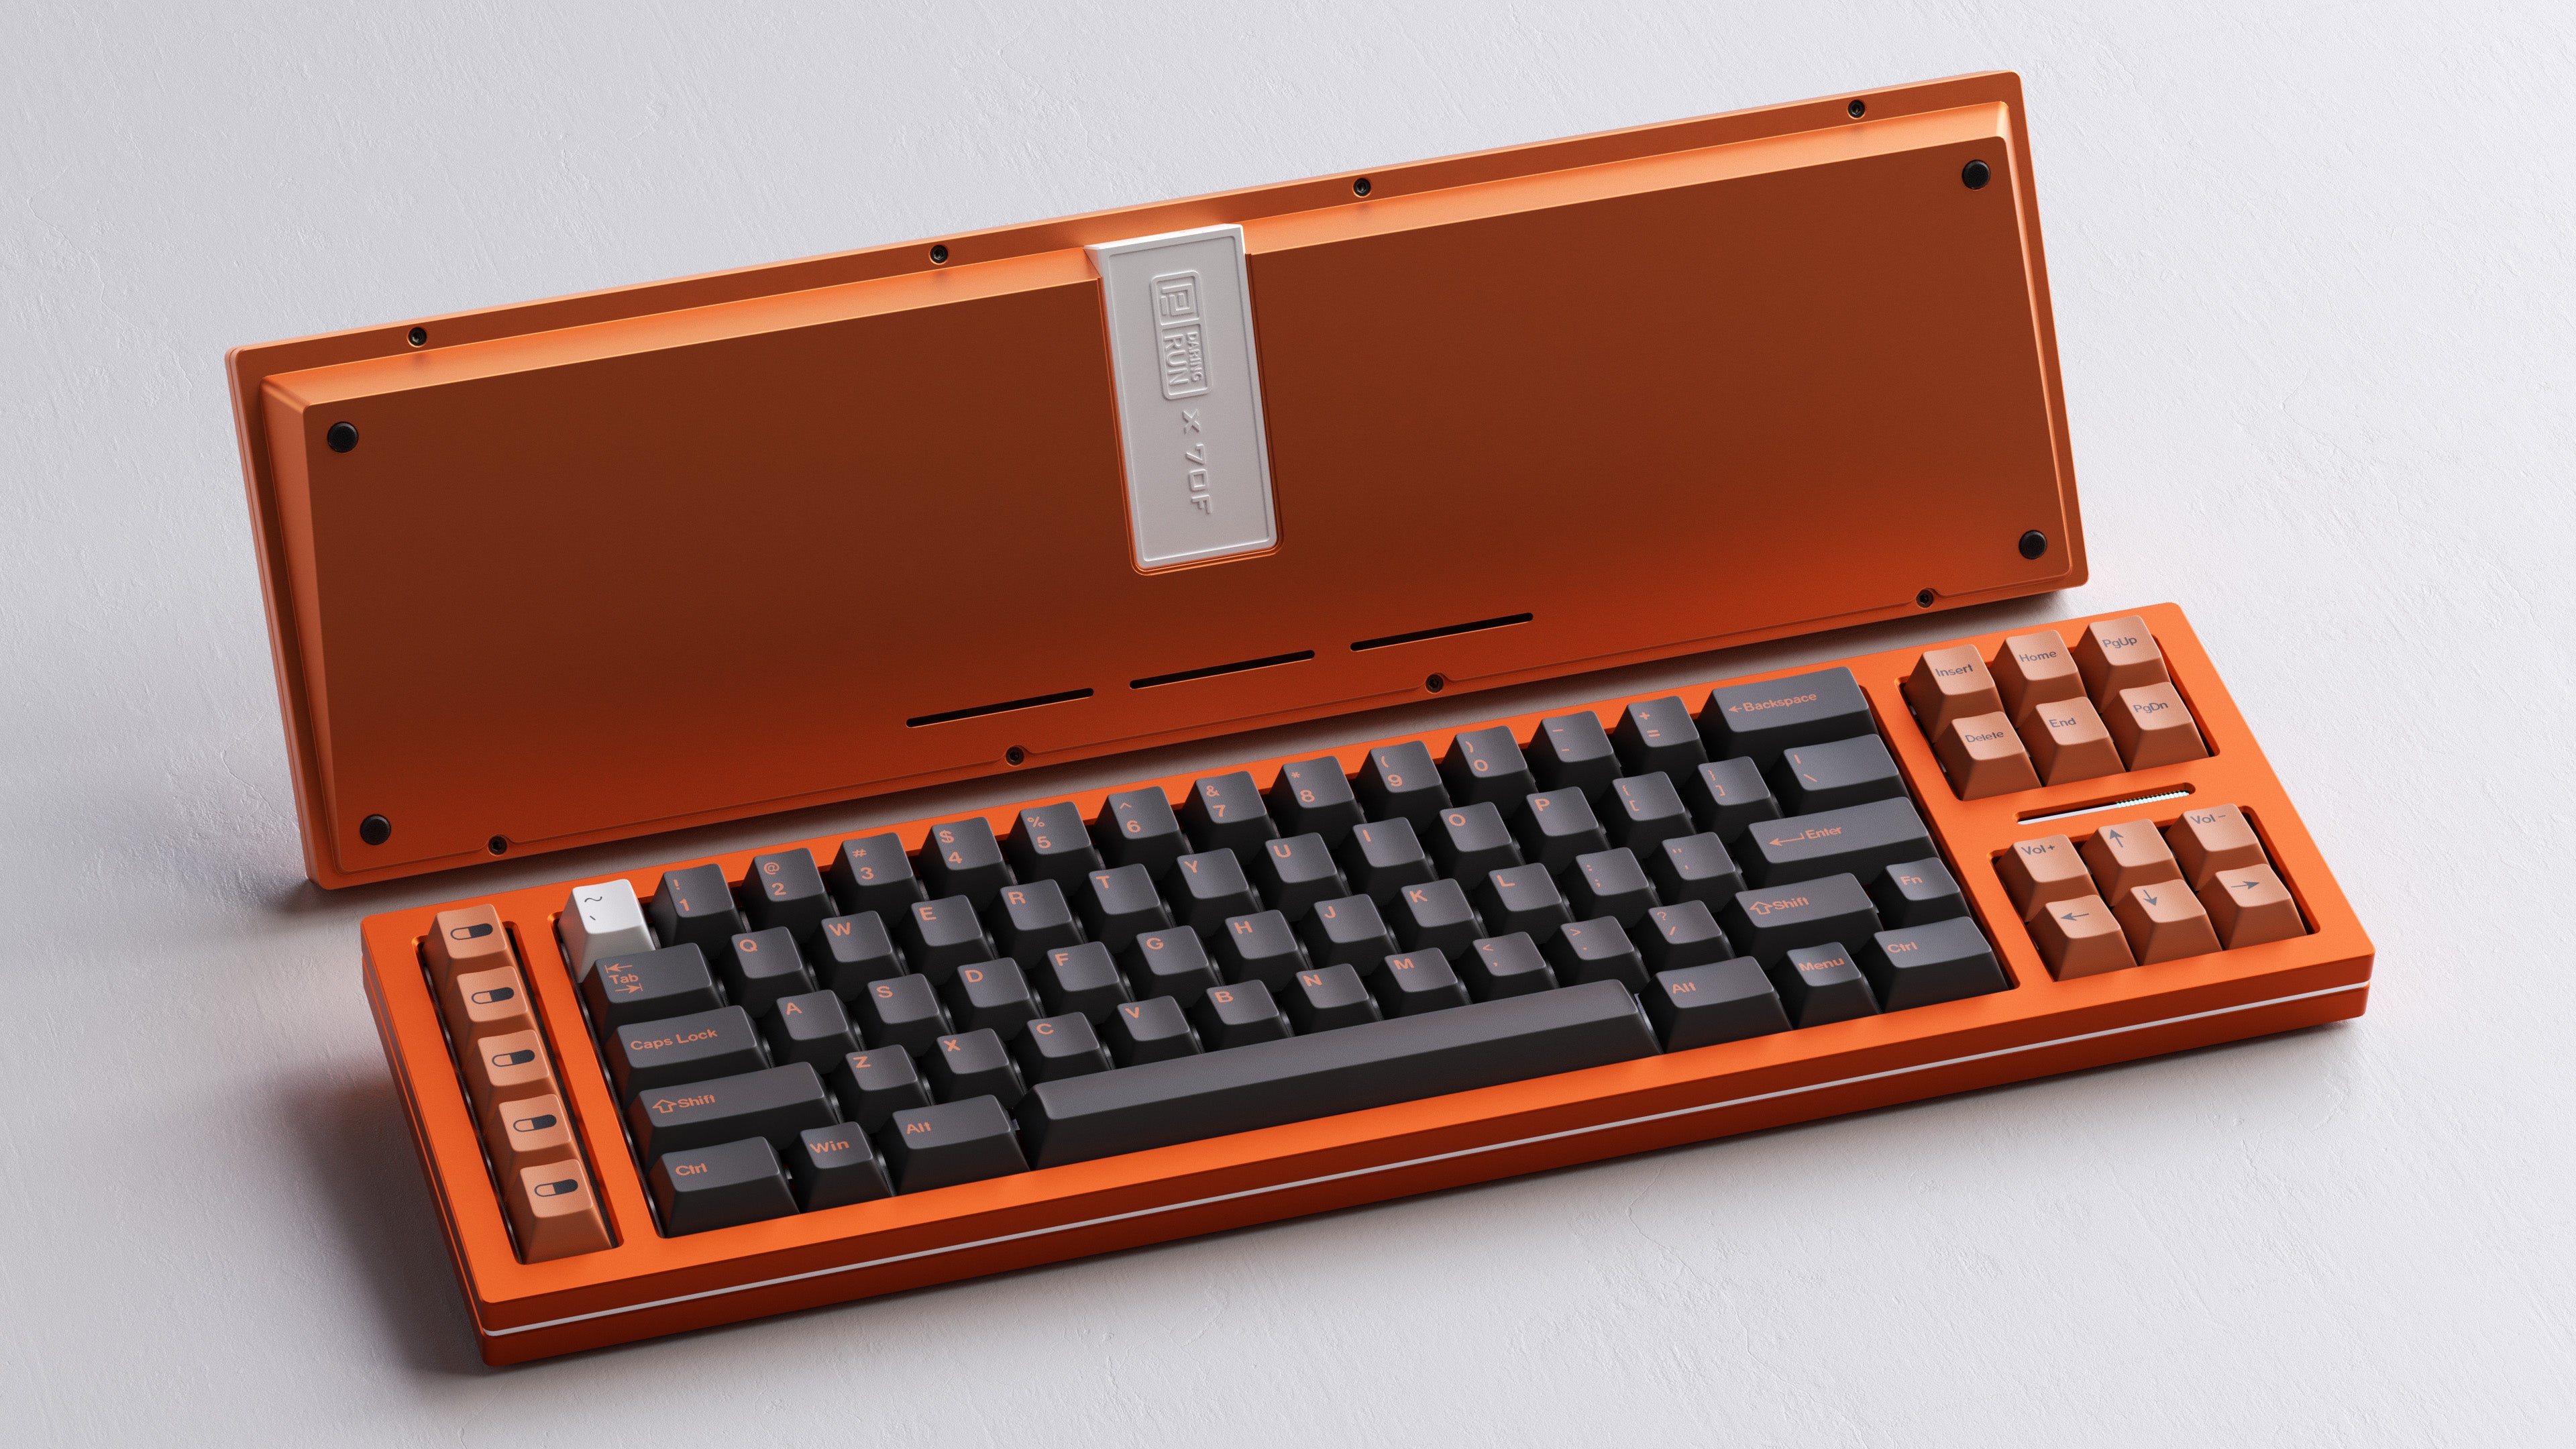 DR-70F - Keyboard Kit (Group Buy)